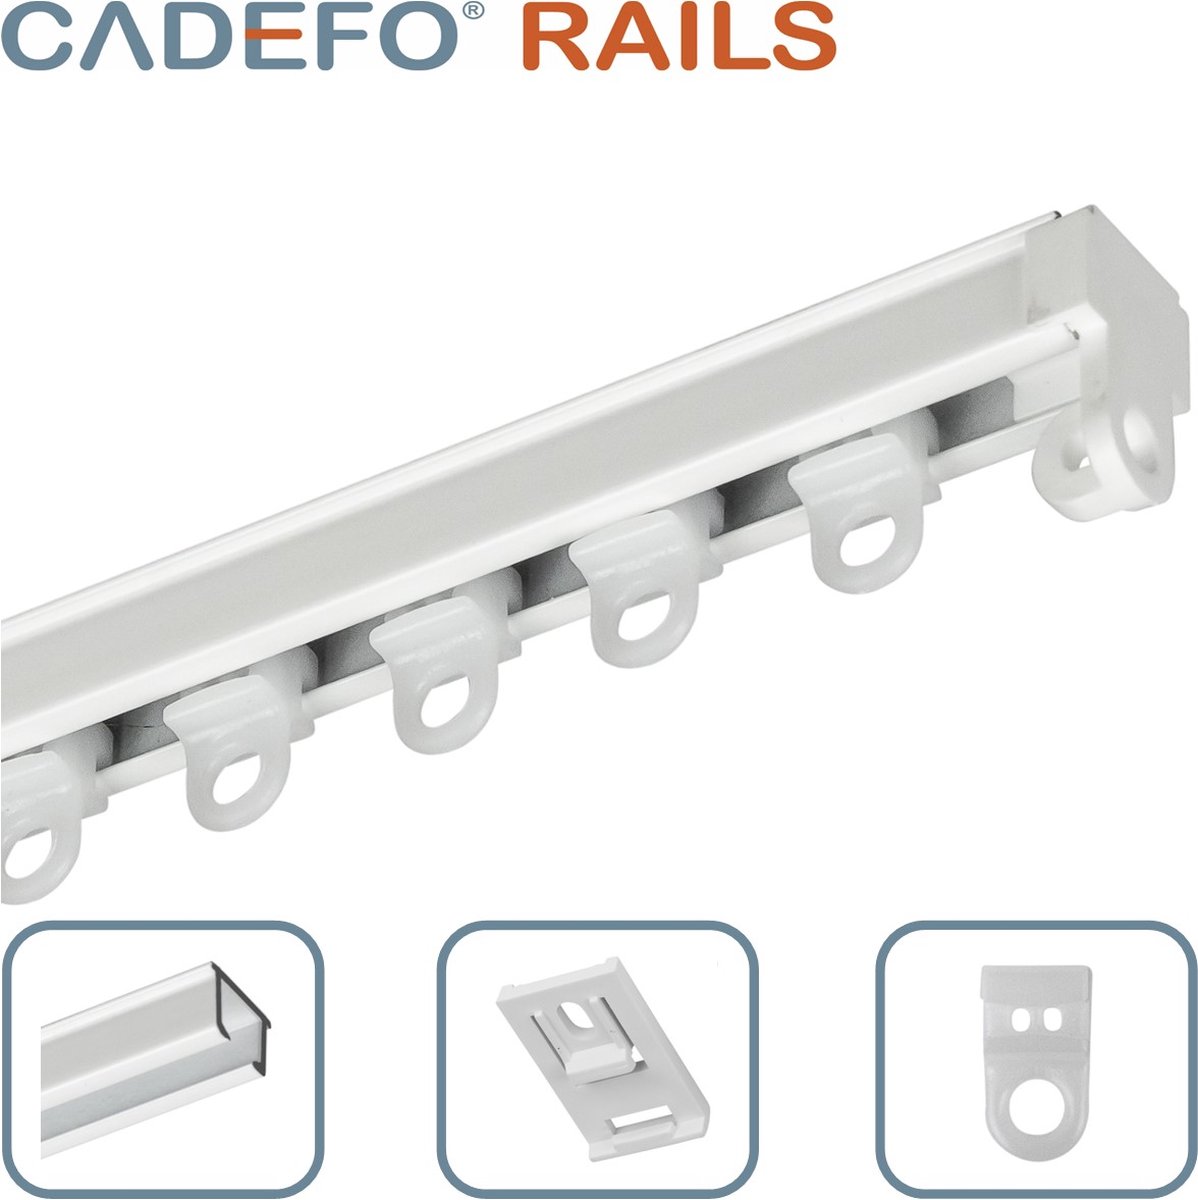 CADEFO RAILS (501 - 550 cm) Gordijnrails - Compleet op maat! - UIT 1 STUK - Leverbaar tot 6 meter - Plafondbevestiging - Lengte 543 cm